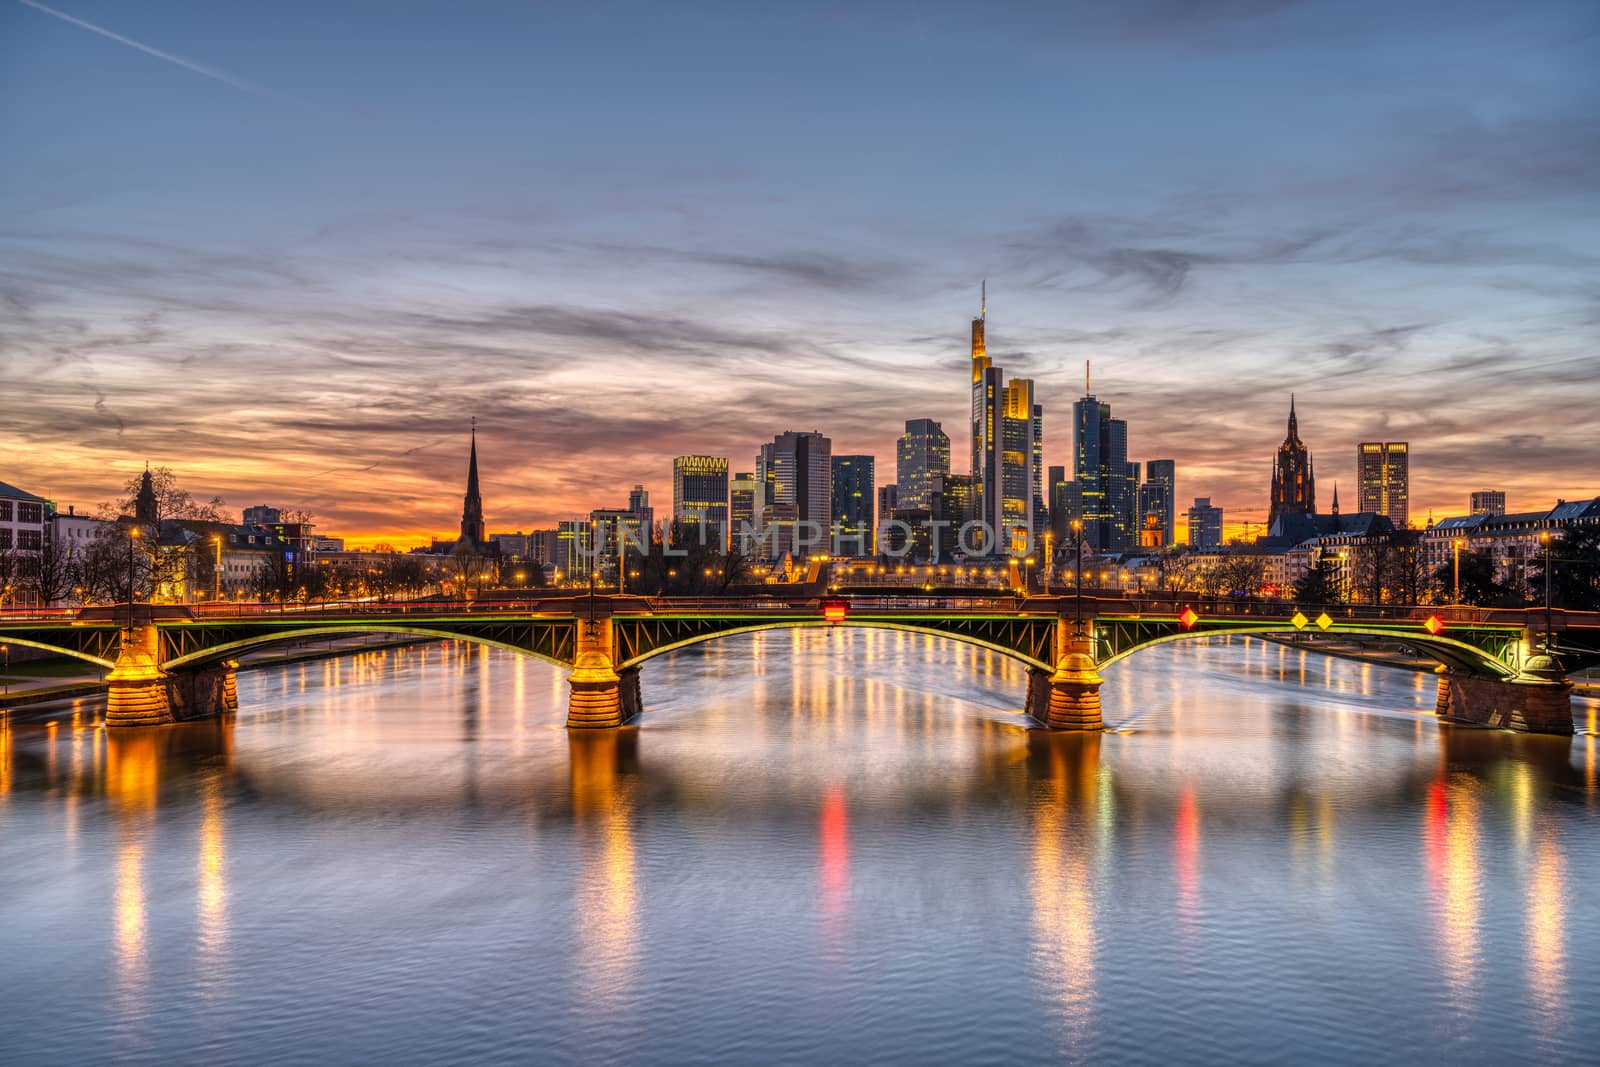 The skyline of Frankfurt in Germany by elxeneize